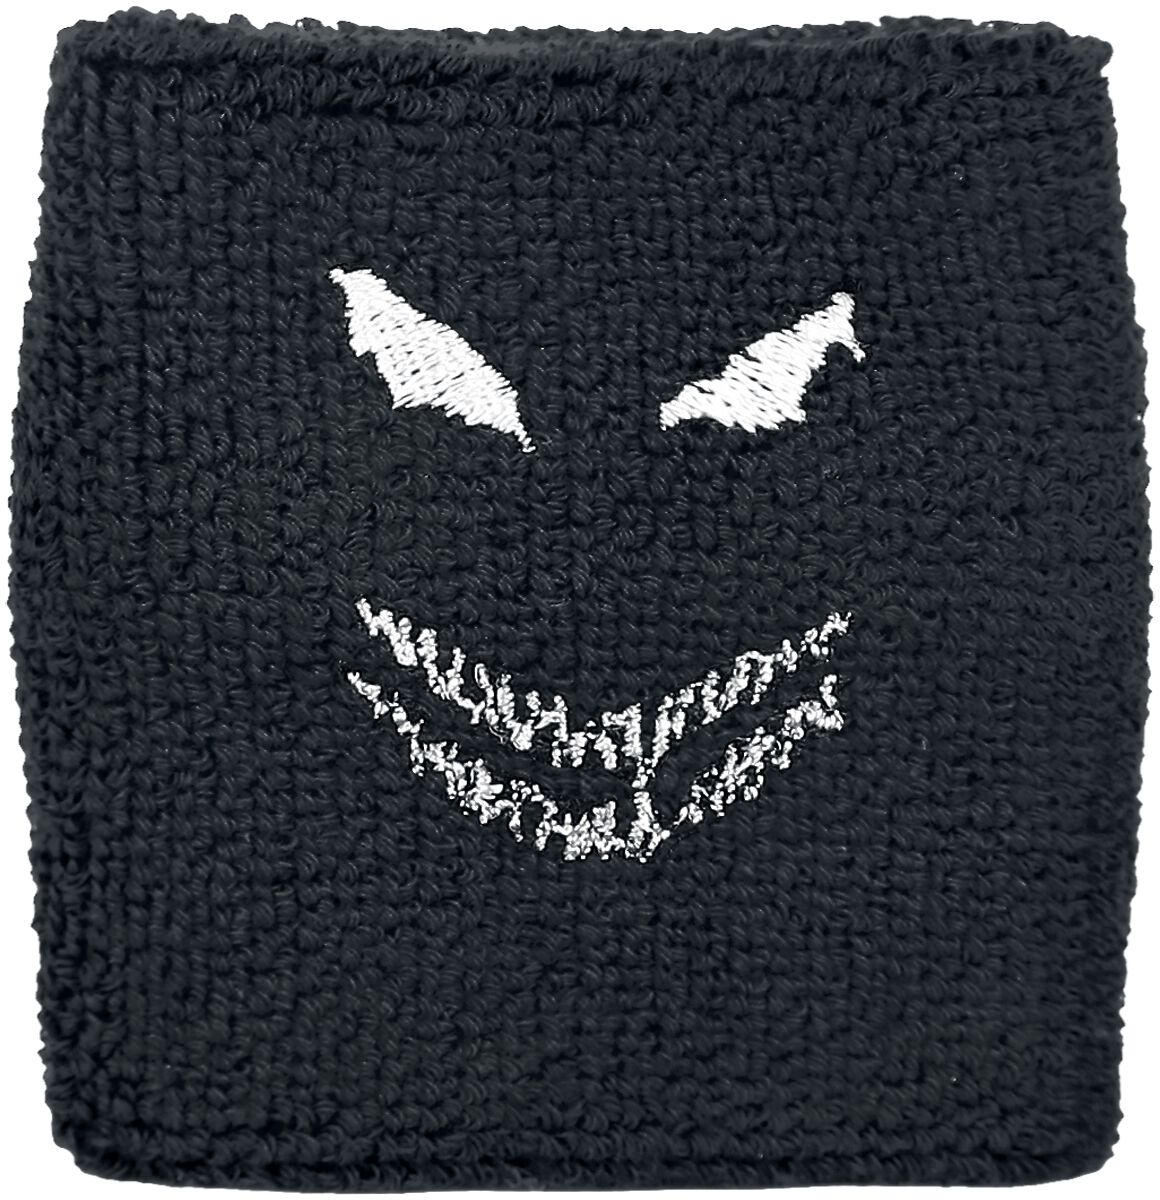 Disturbed Schweißband - Face - Wristband - schwarz  - Lizenziertes Merchandise!